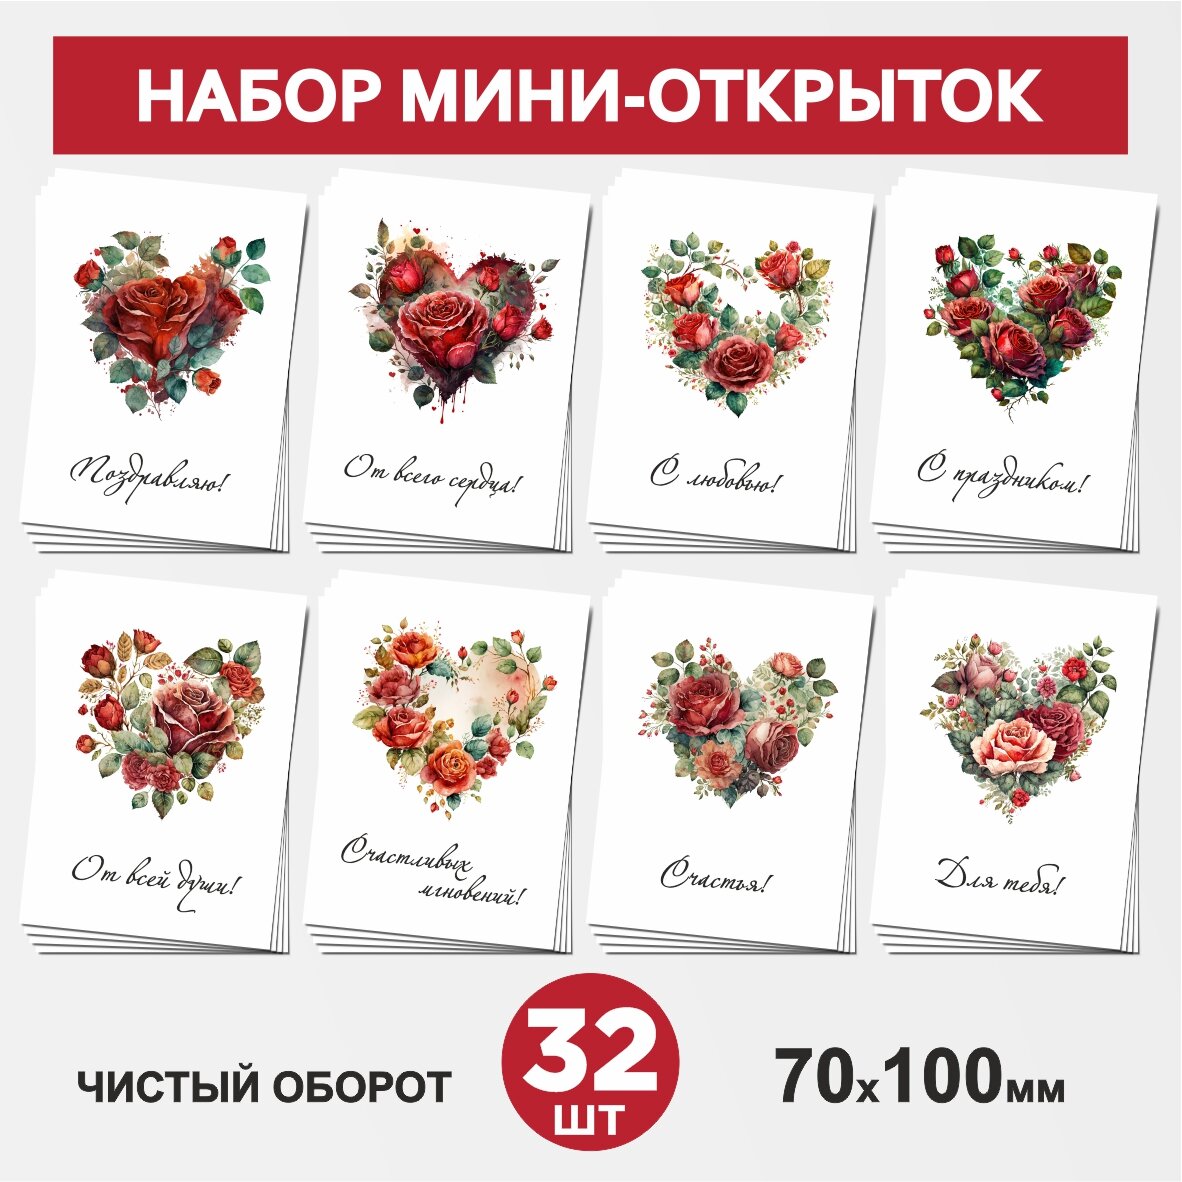 Набор мини-открыток 32 шт, 70х100мм, бирки, карточки для подарков на 14 февраля, 8 Марта, День Рождения - Сердце, цветы №2, postcard_32_heart_set_2